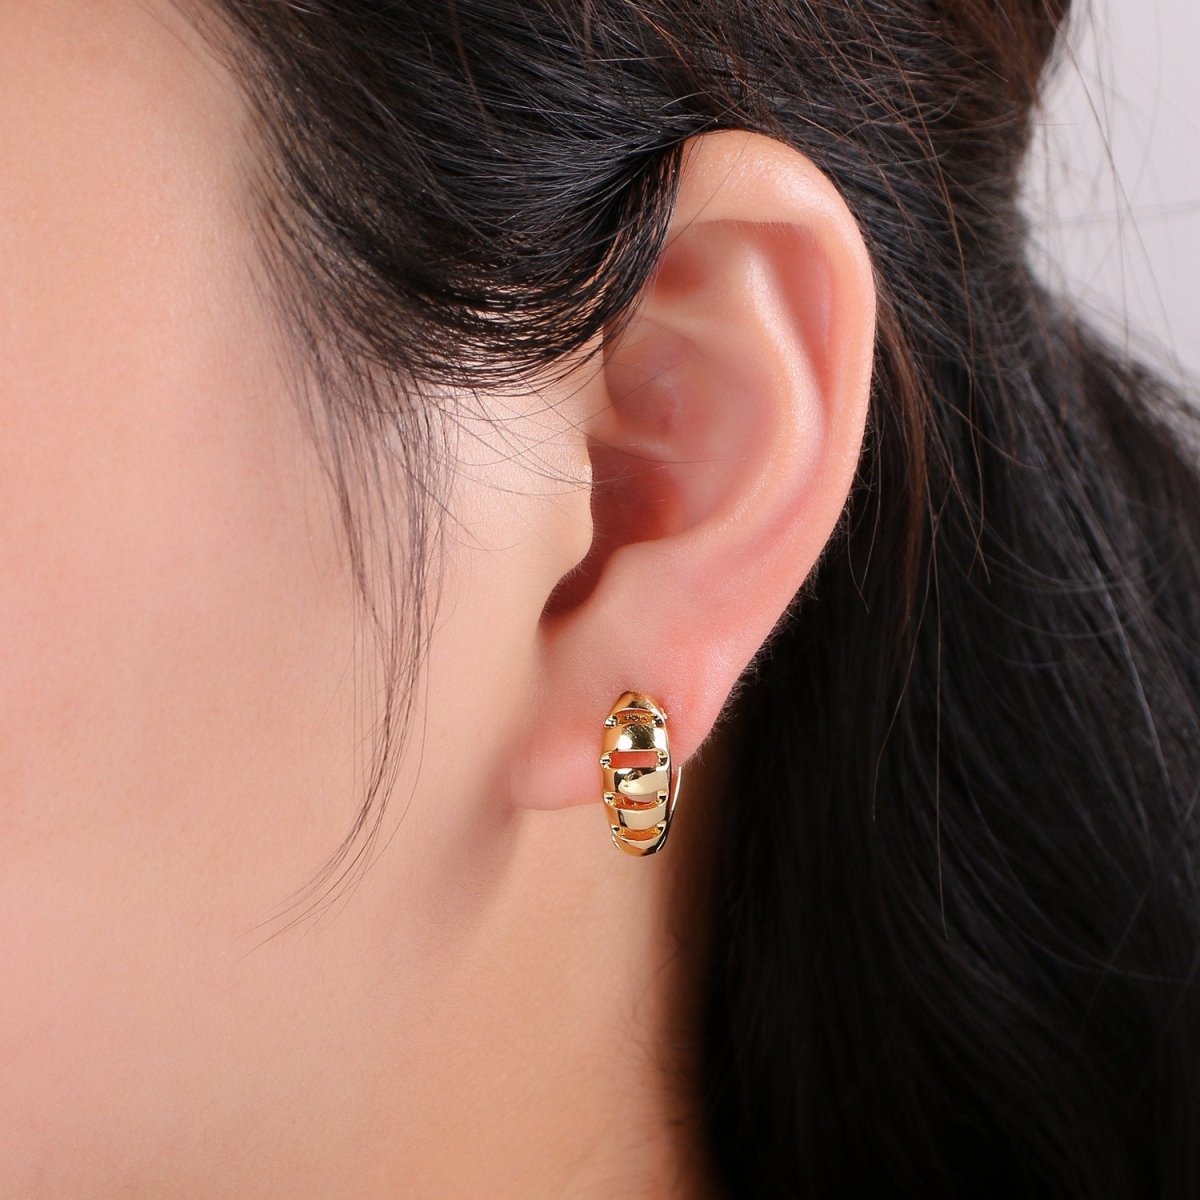 15mm Huggie Hoop Earring, Gold Large hoop earring, Chunky Hoops, Thick Gold Hoops, Medium hoop earrings, Vermeil Earring, gold Hoop Earrings Q-242 - DLUXCA